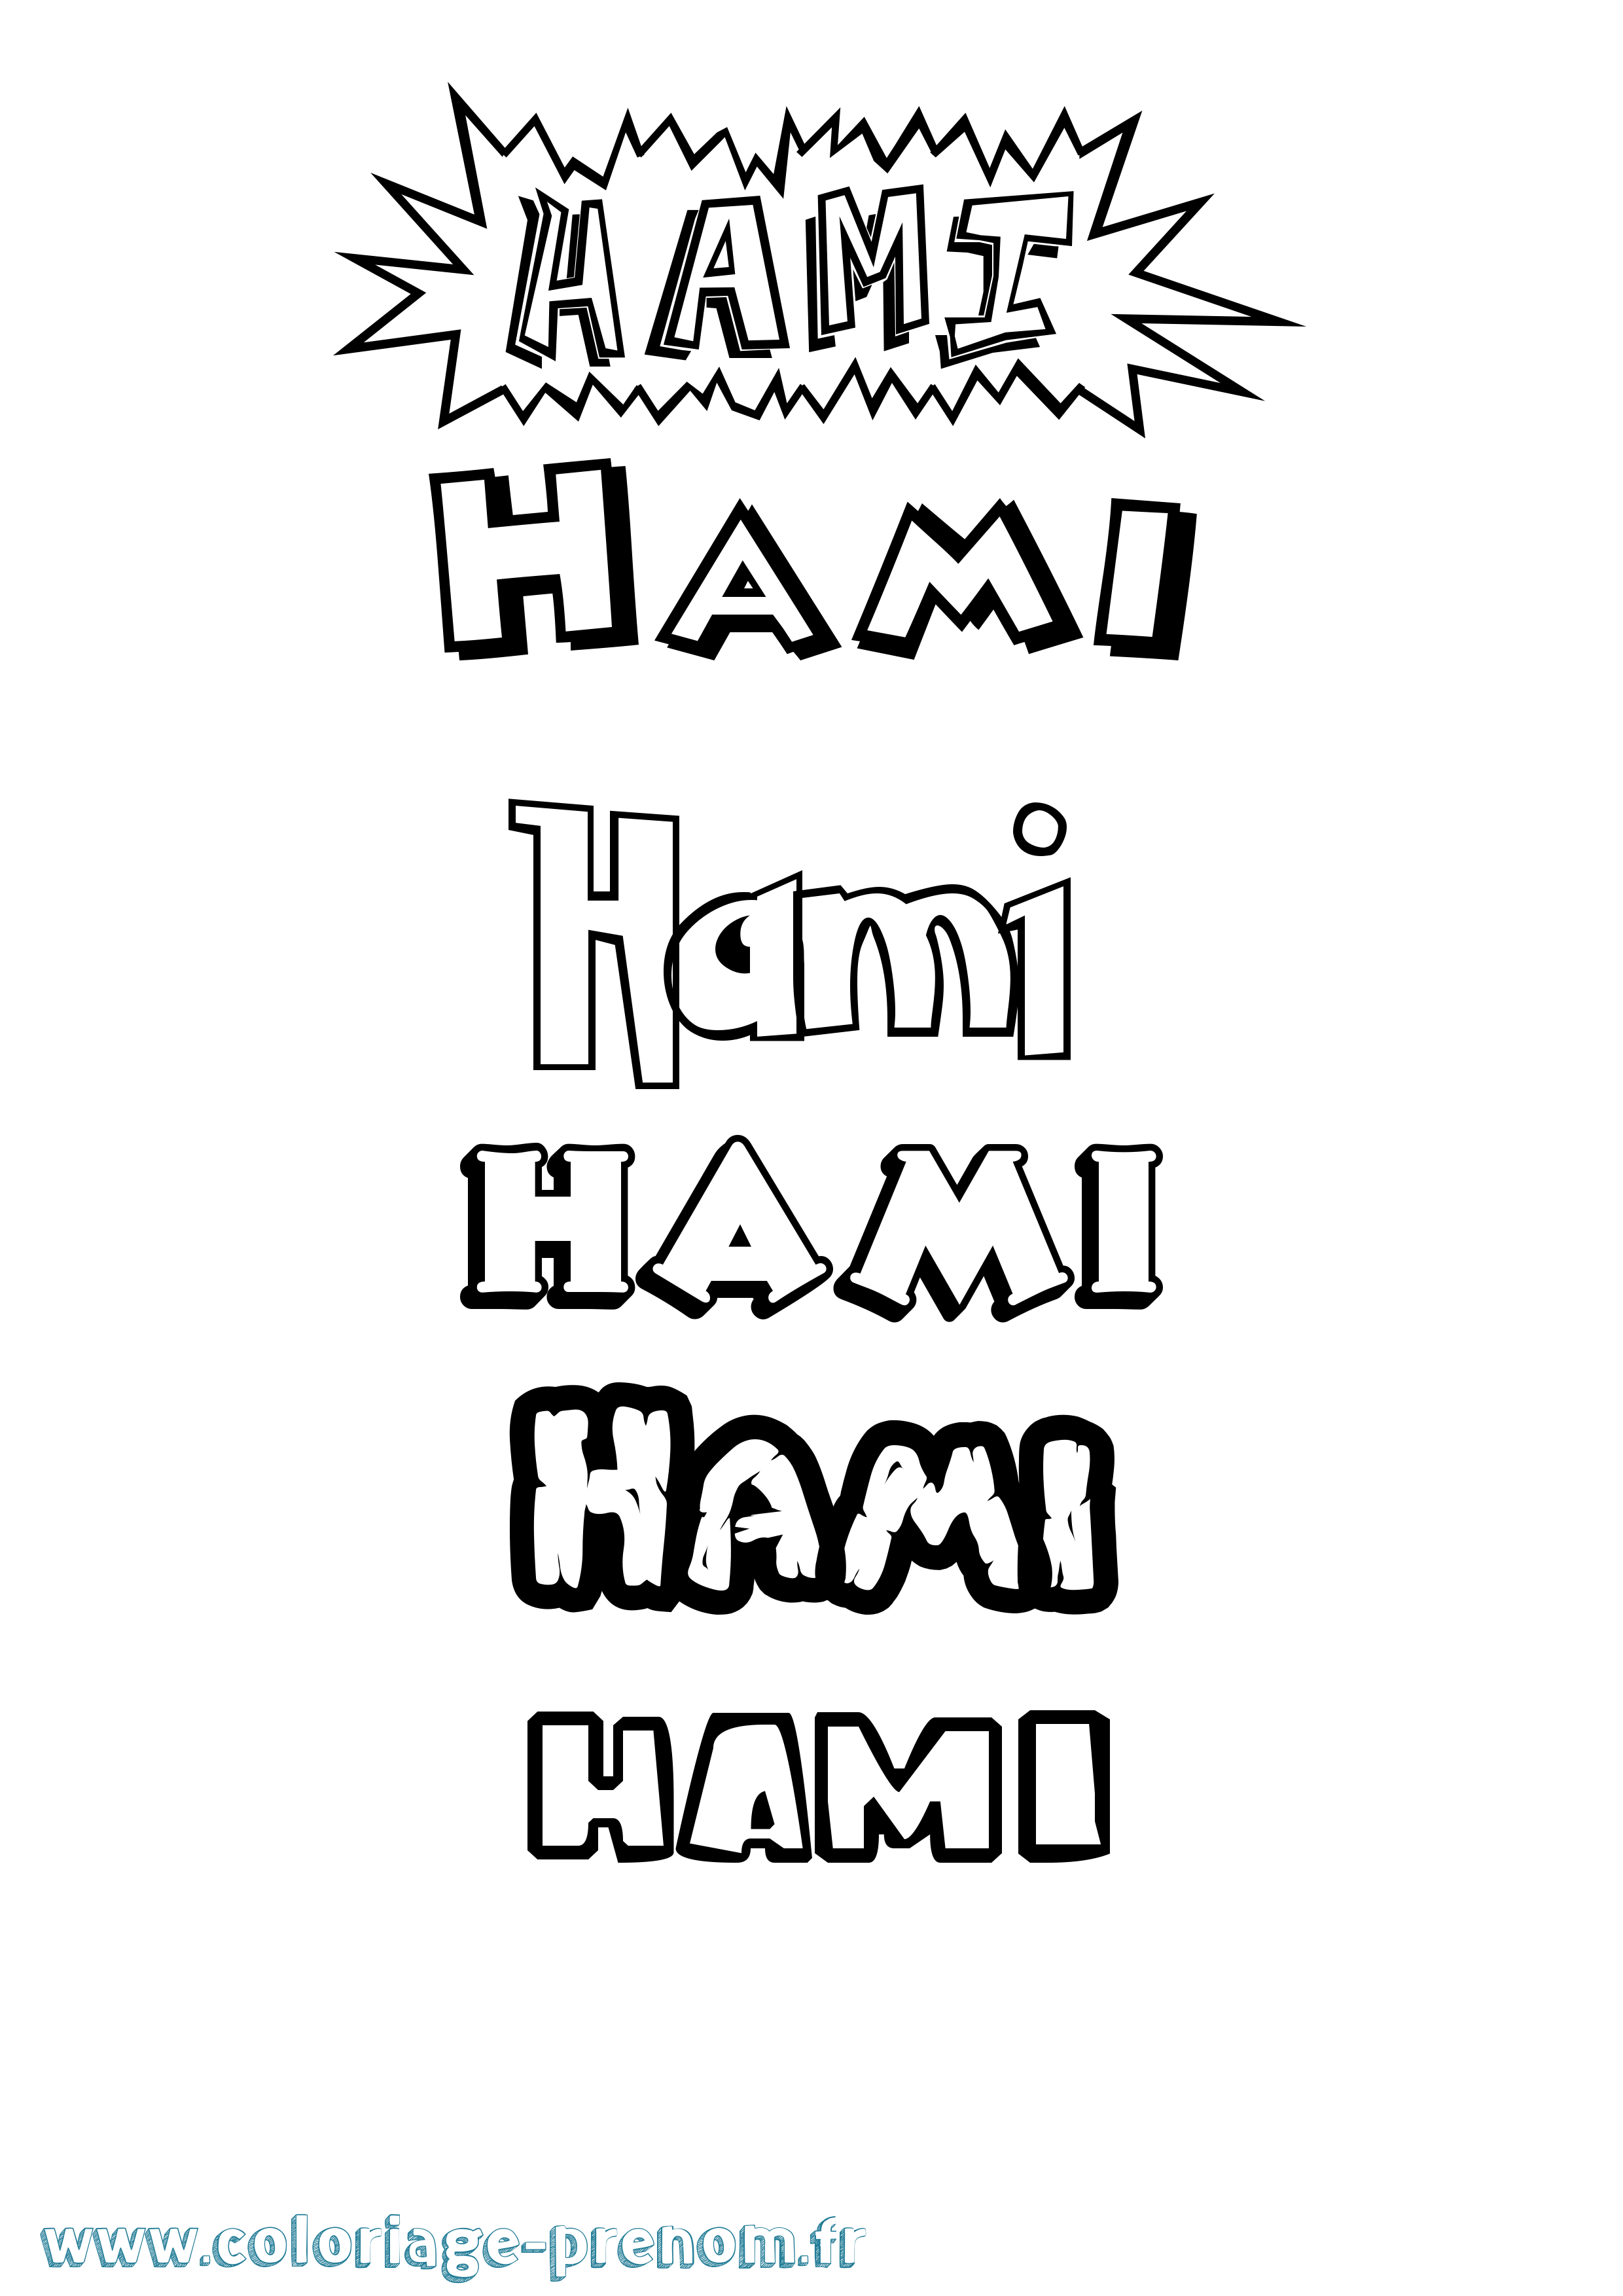 Coloriage prénom Hami Dessin Animé